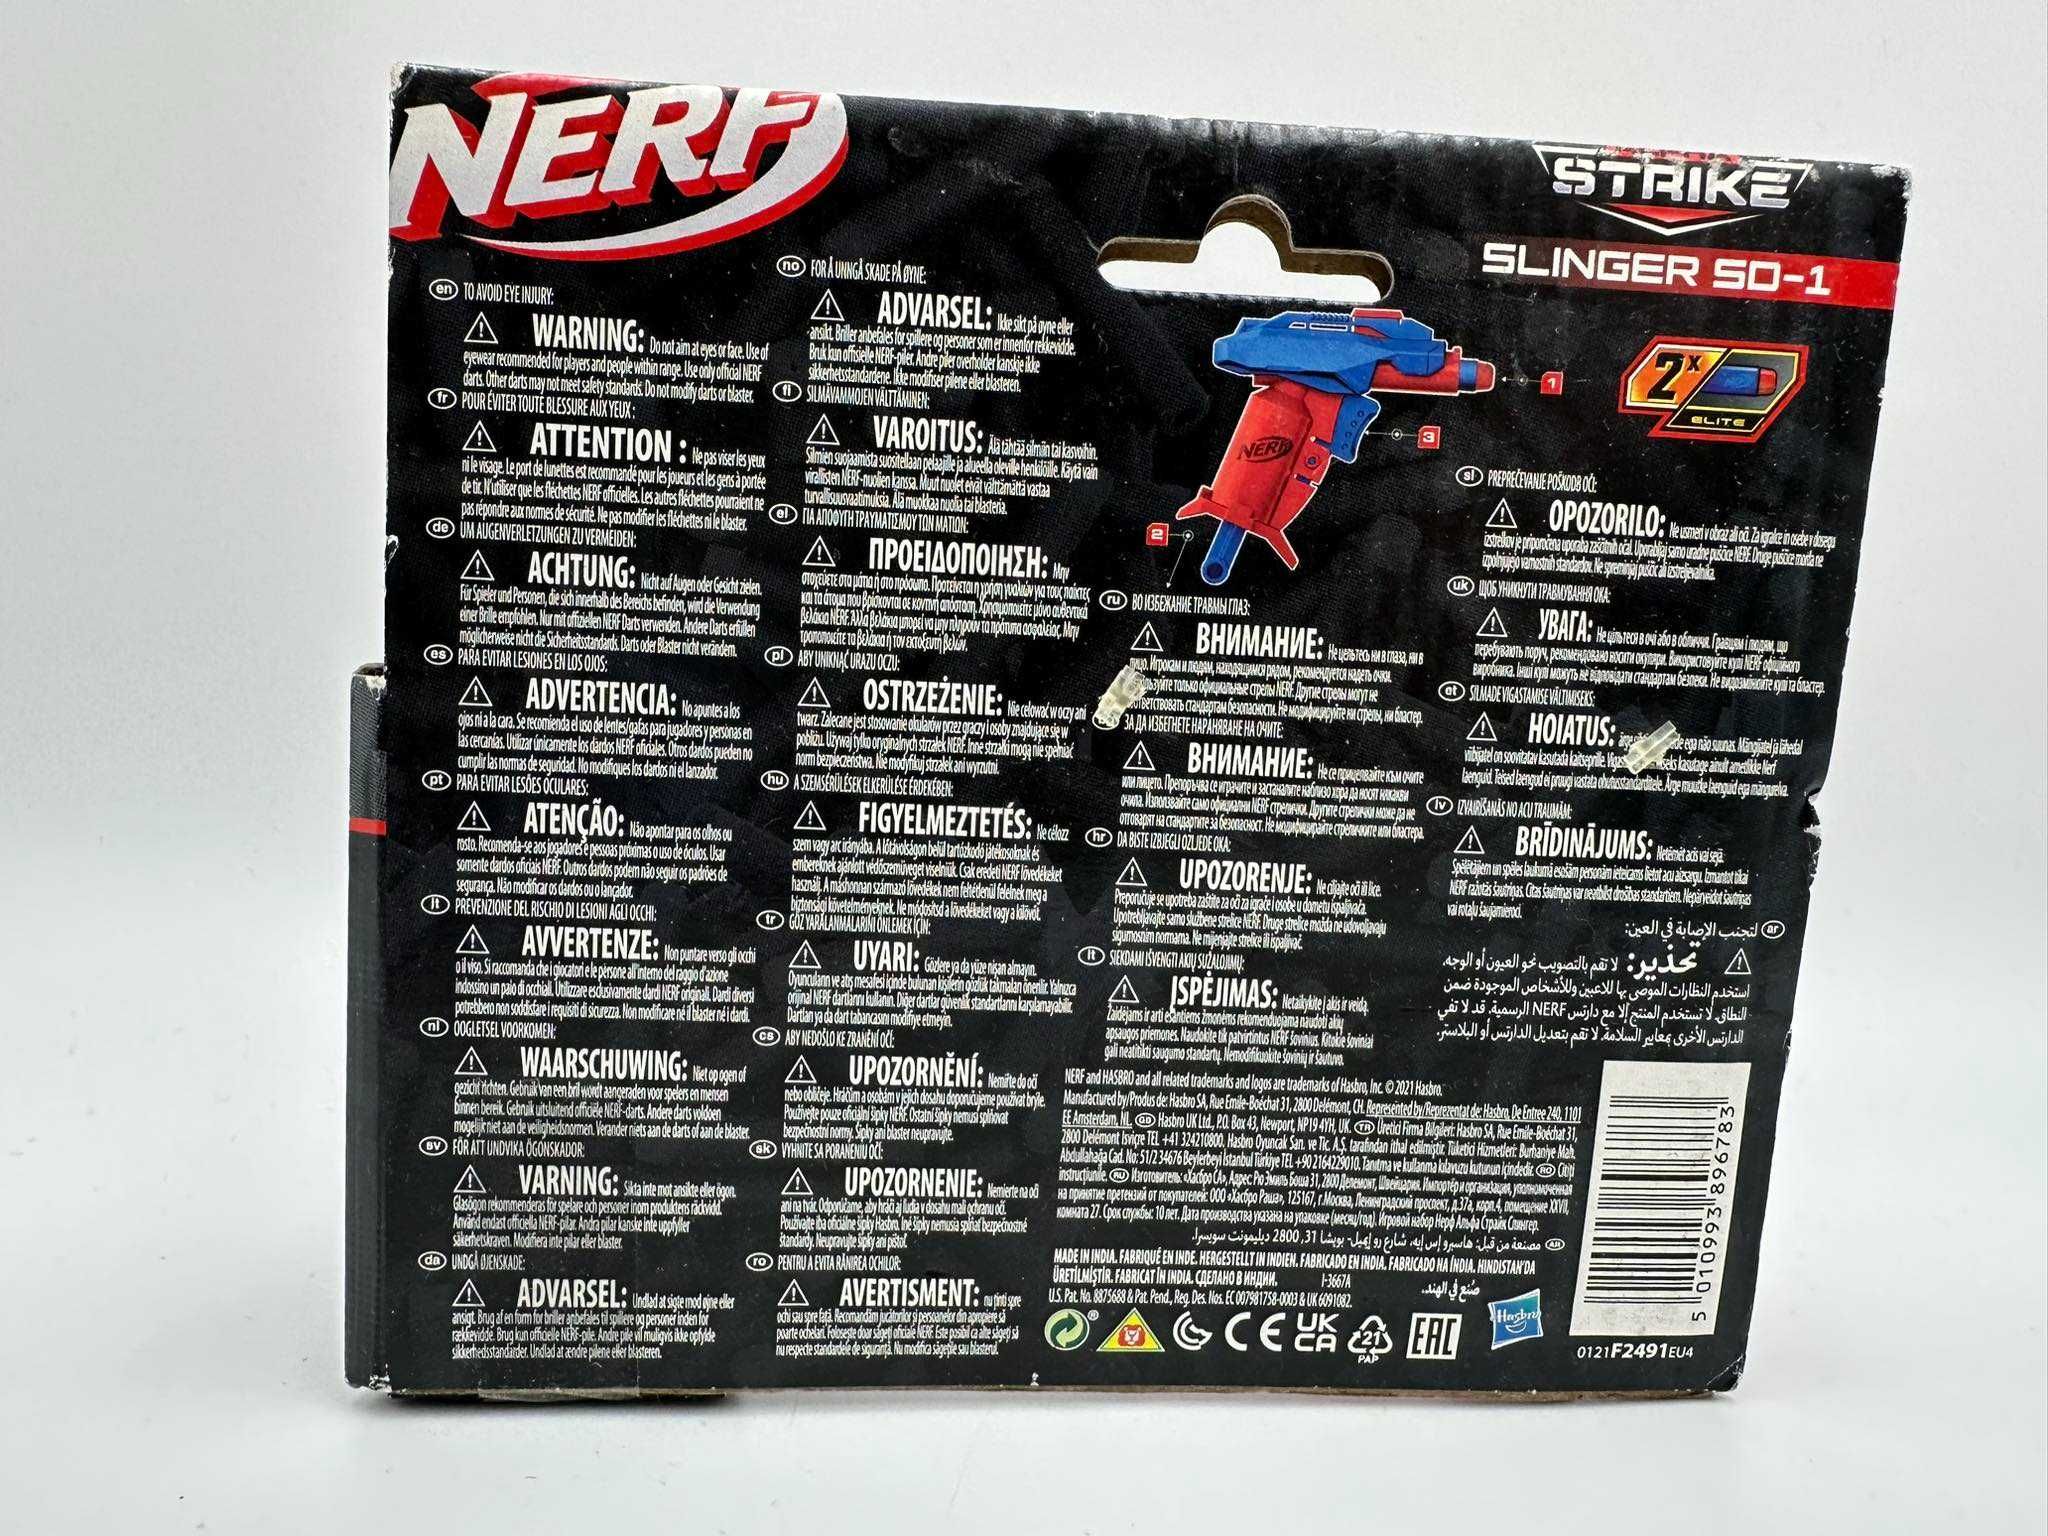 Pistolet Hasbro Nerf Alfa Strike Slinger SD-1